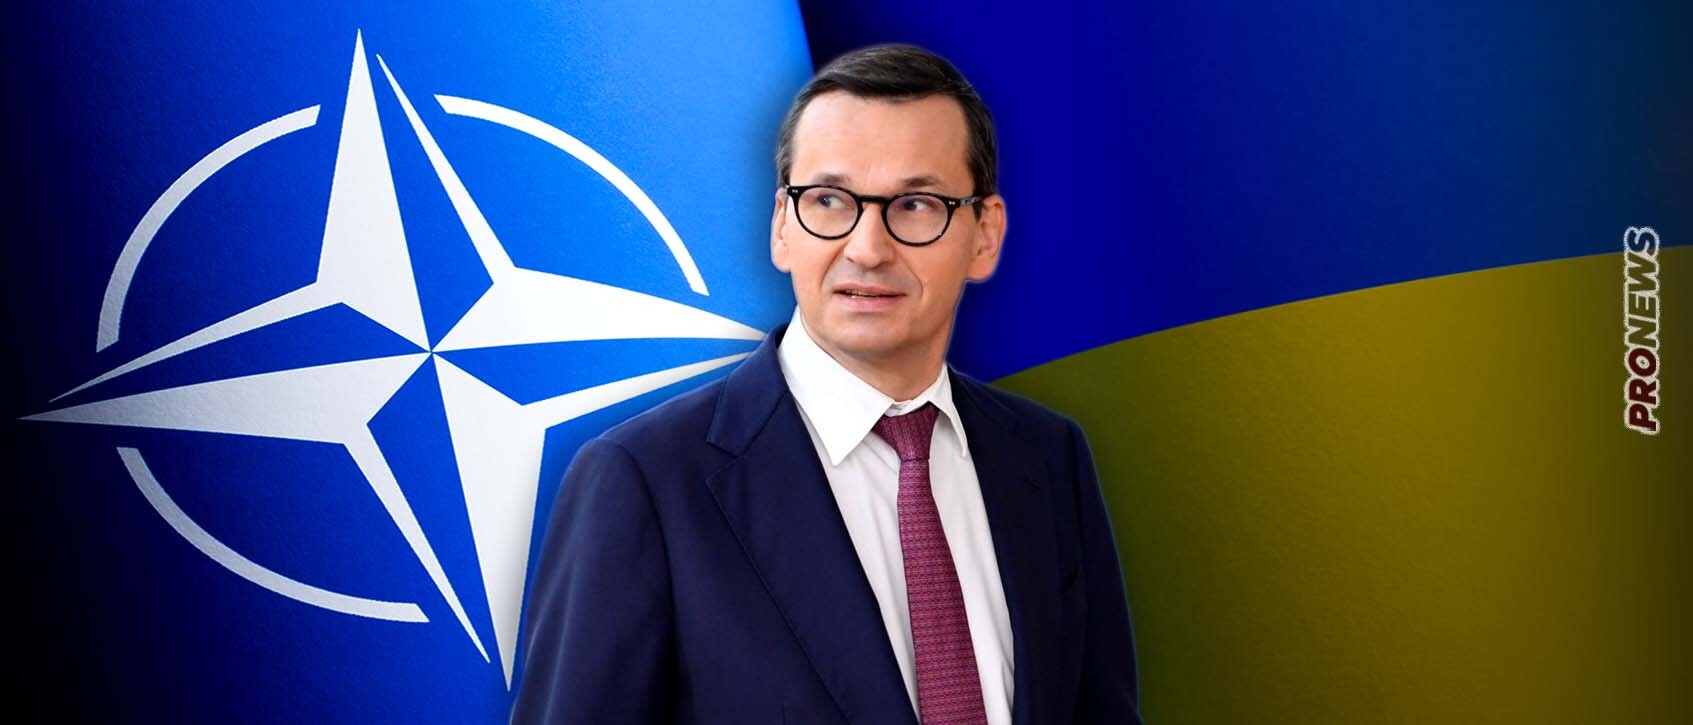 Πολωνός πρωθυπουργός: «Είμαστε έτοιμοι να παραδώσουμε μαχητικά αεροσκάφη στην Ουκρανία μόλις το εγκρίνει το ΝΑΤΟ»!